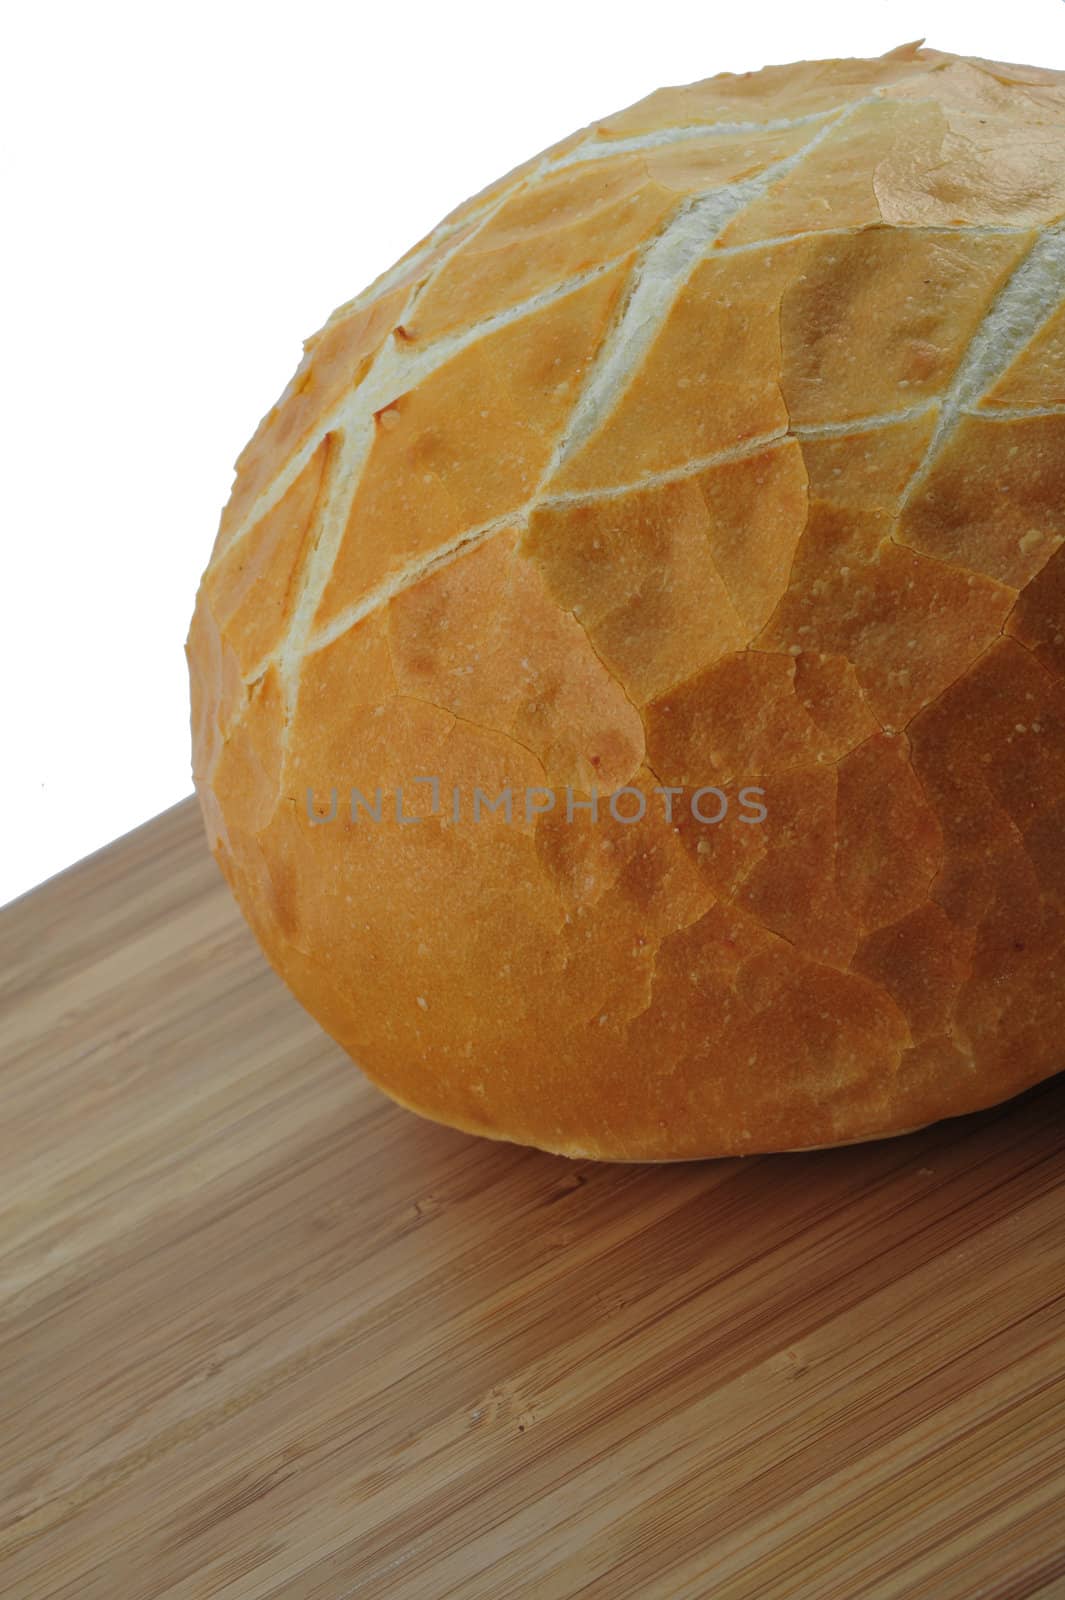 Round loaf of fresh sourdough bread on a cutting board